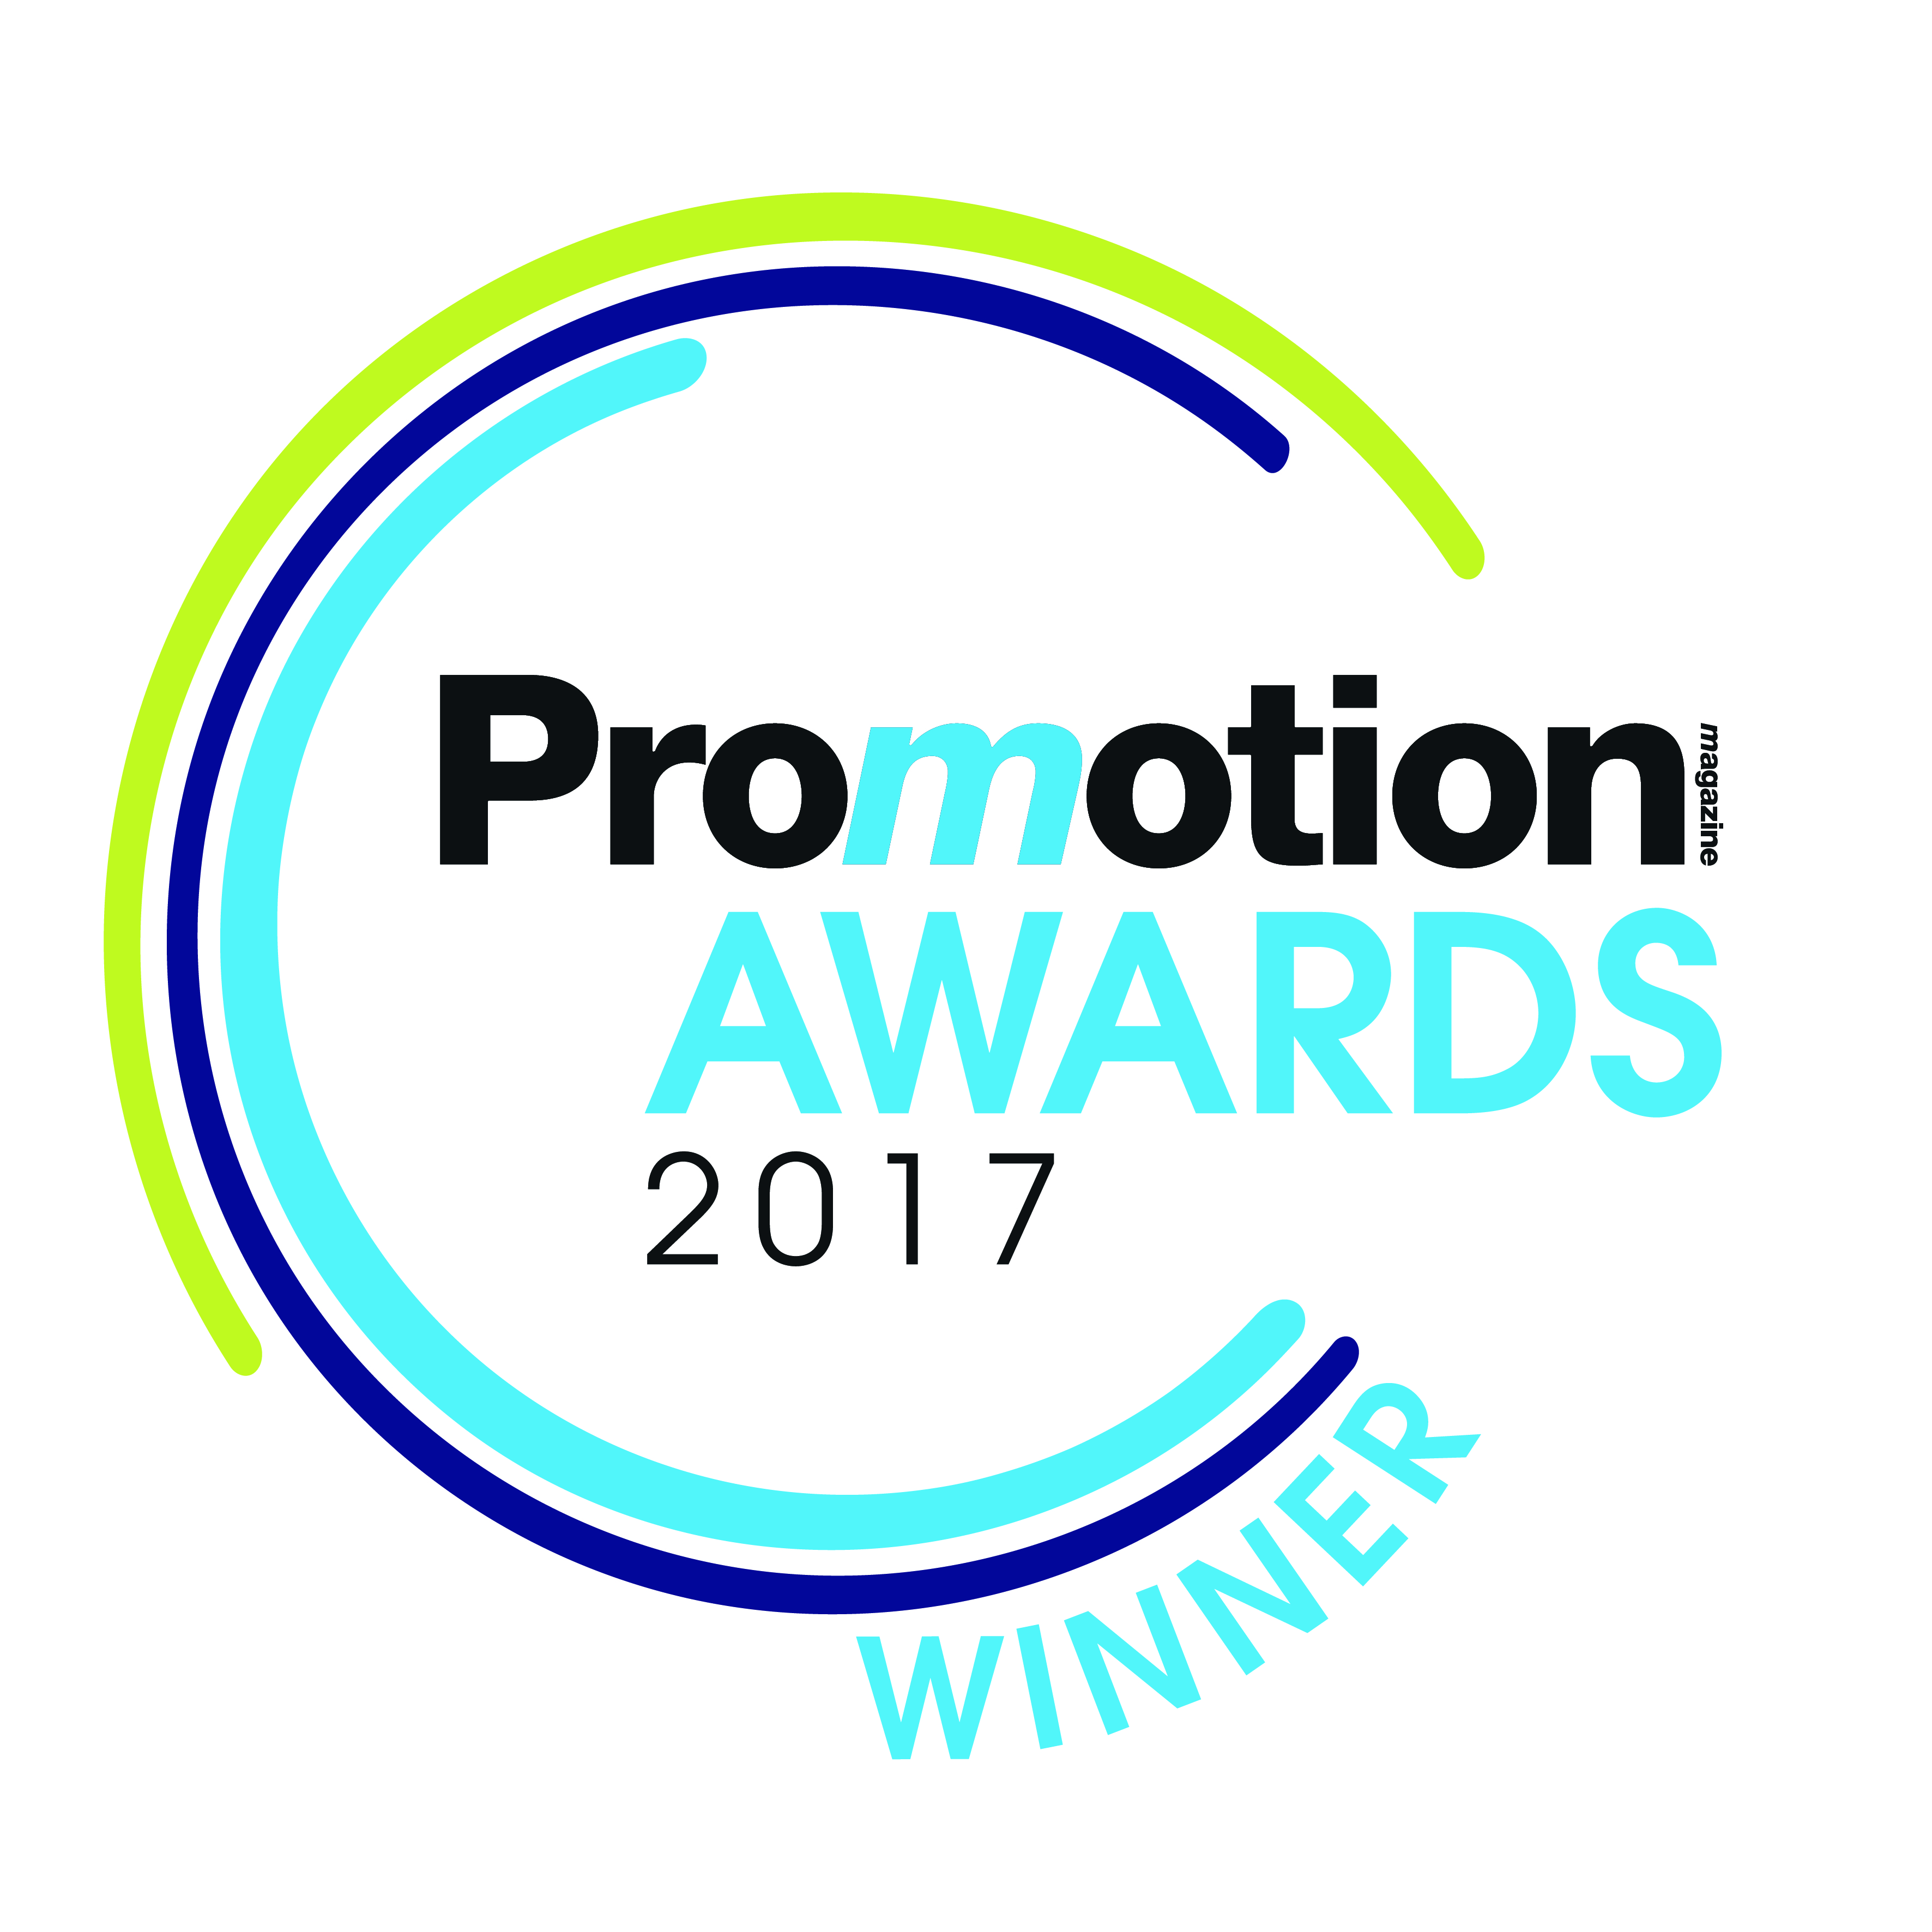 Promotion Awards, successo della prima edizione